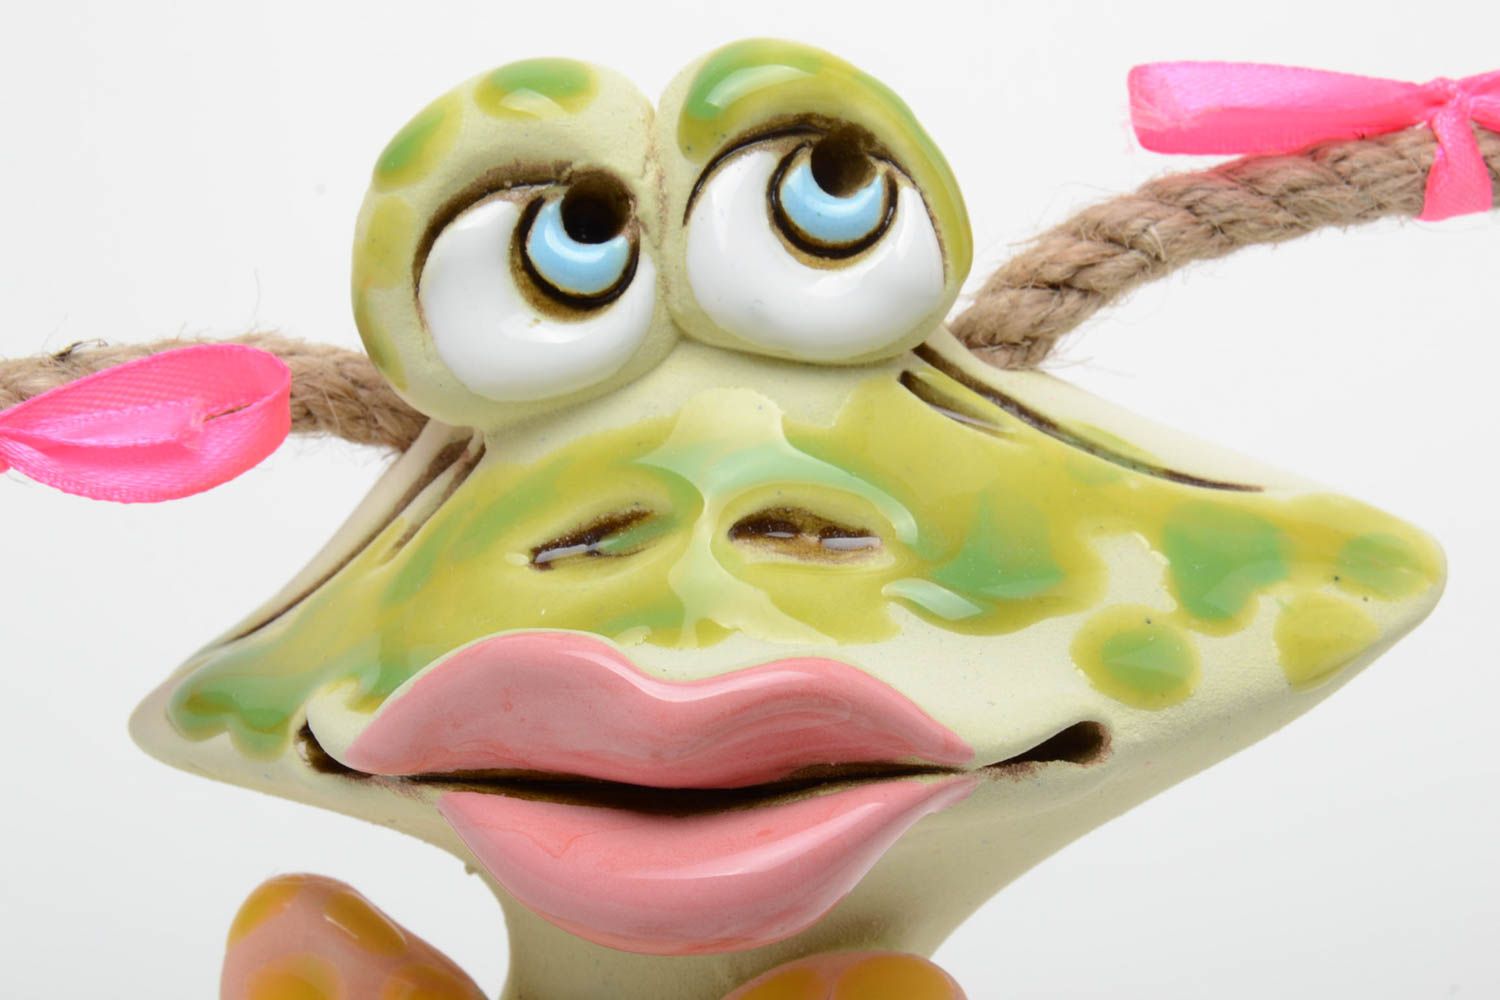 Яркая копилка из глины в виде лягушки зеленая полуфпрфоровая керамика хенд мейд фото 3